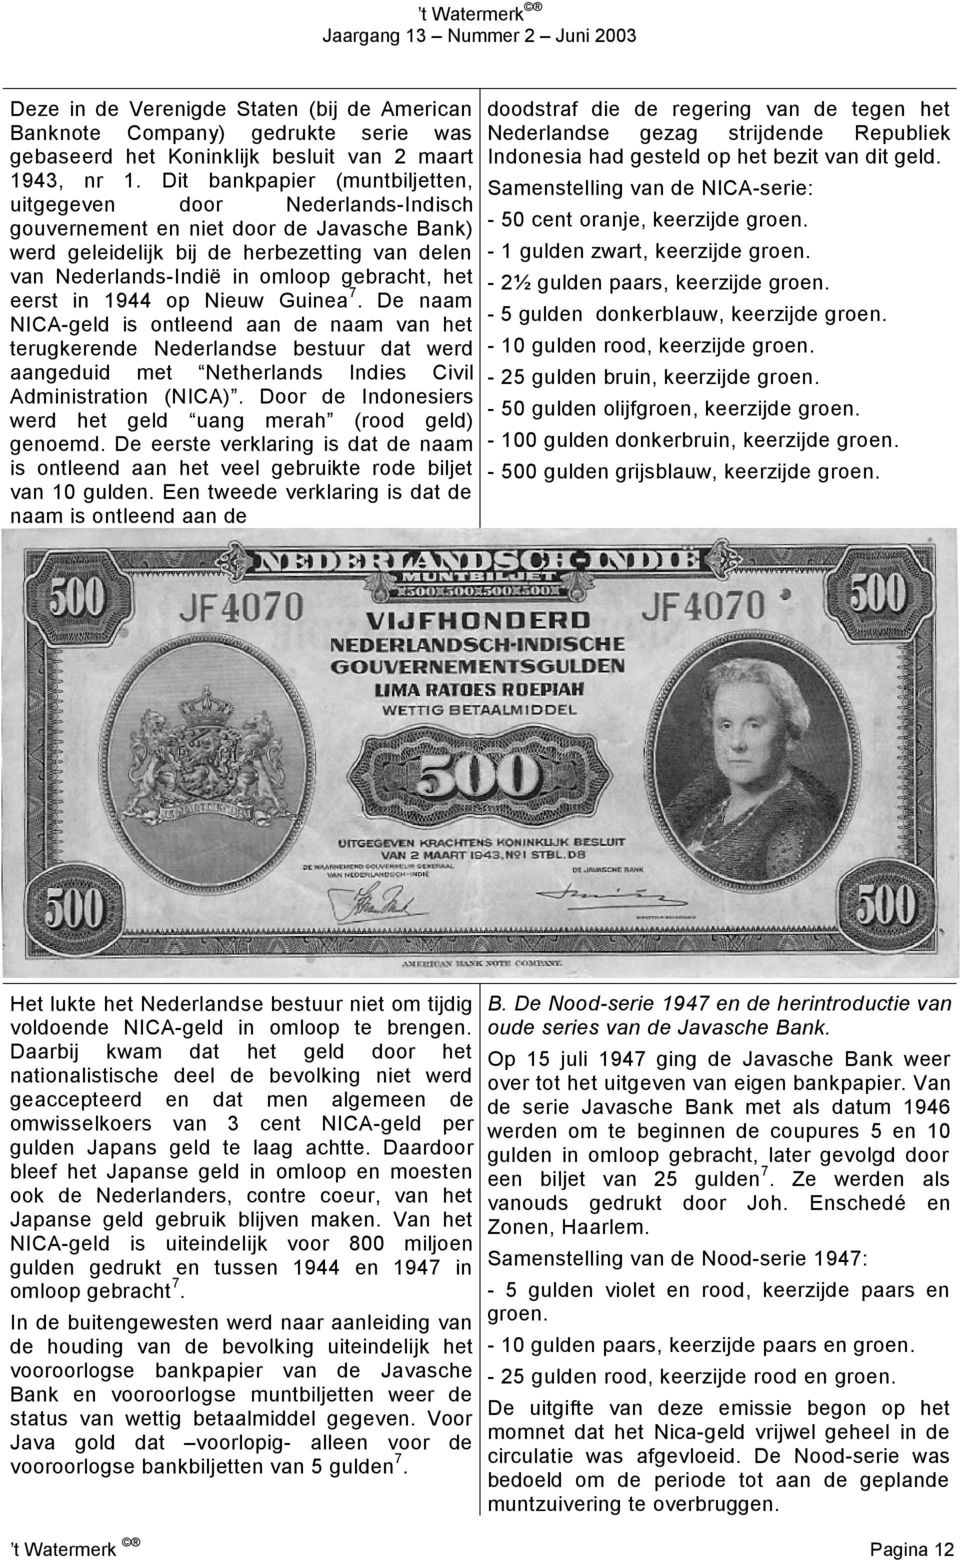 het eerst in 1944 op Nieuw Guinea 7. De naam NICA-geld is ontleend aan de naam van het terugkerende Nederlandse bestuur dat werd aangeduid met Netherlands Indies Civil Administration (NICA).